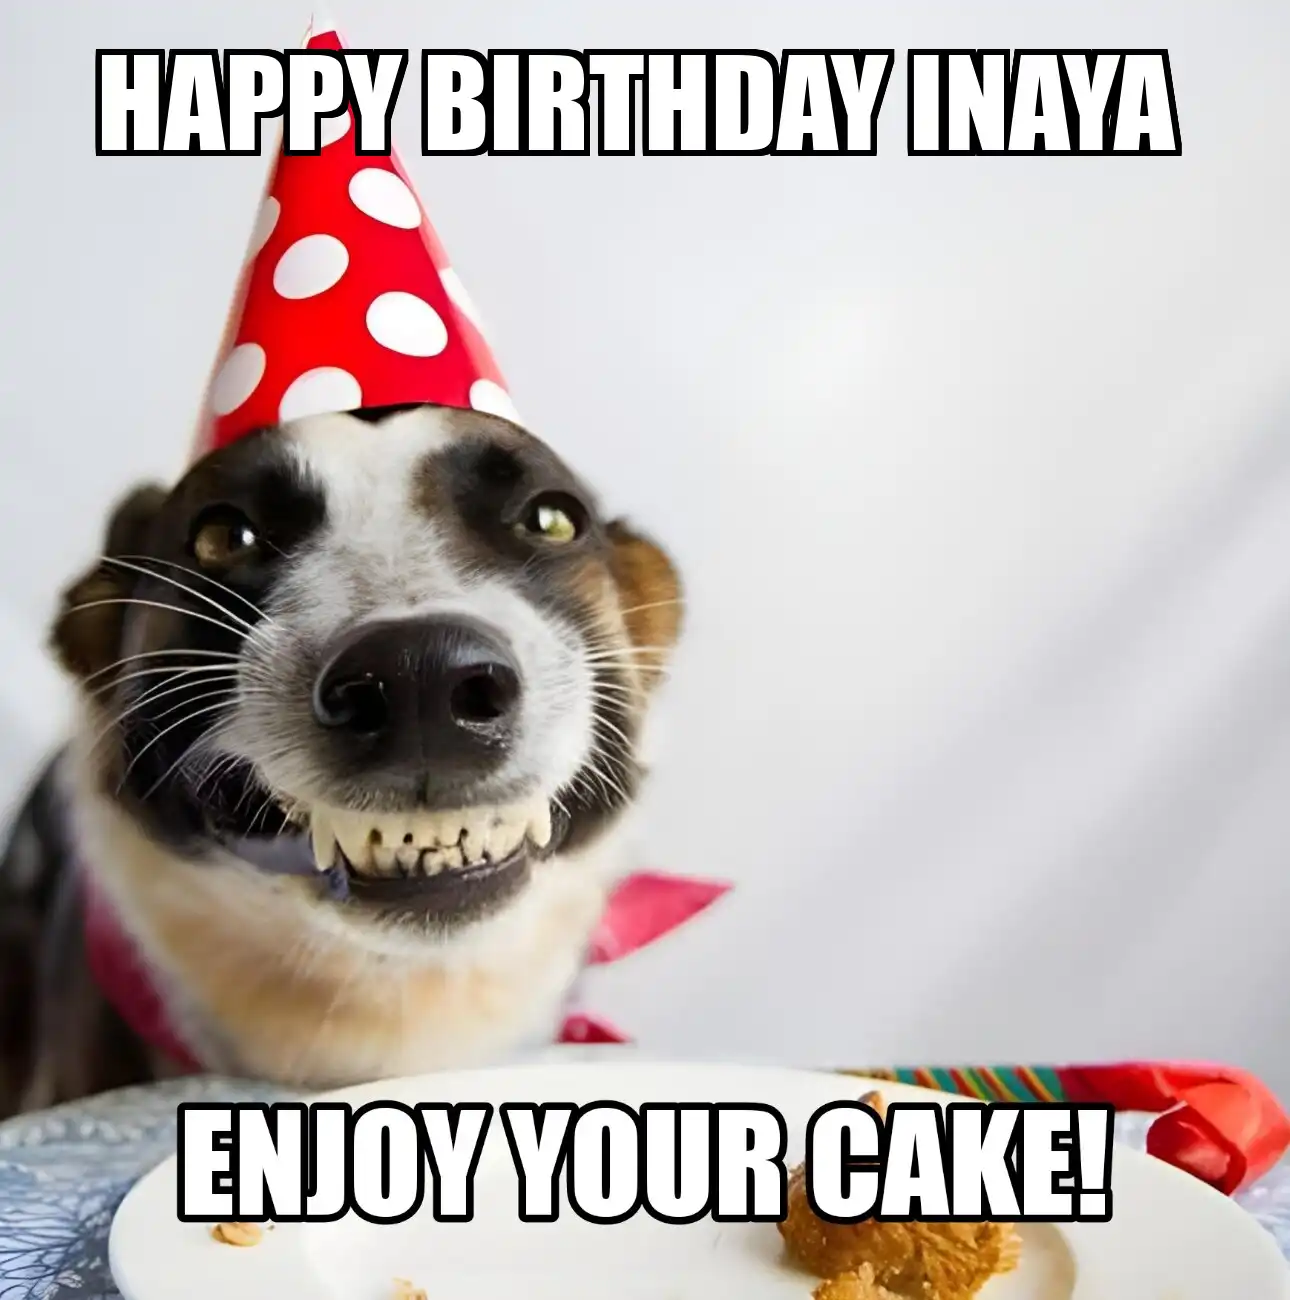 Happy Birthday Inaya Enjoy Your Cake Dog Meme